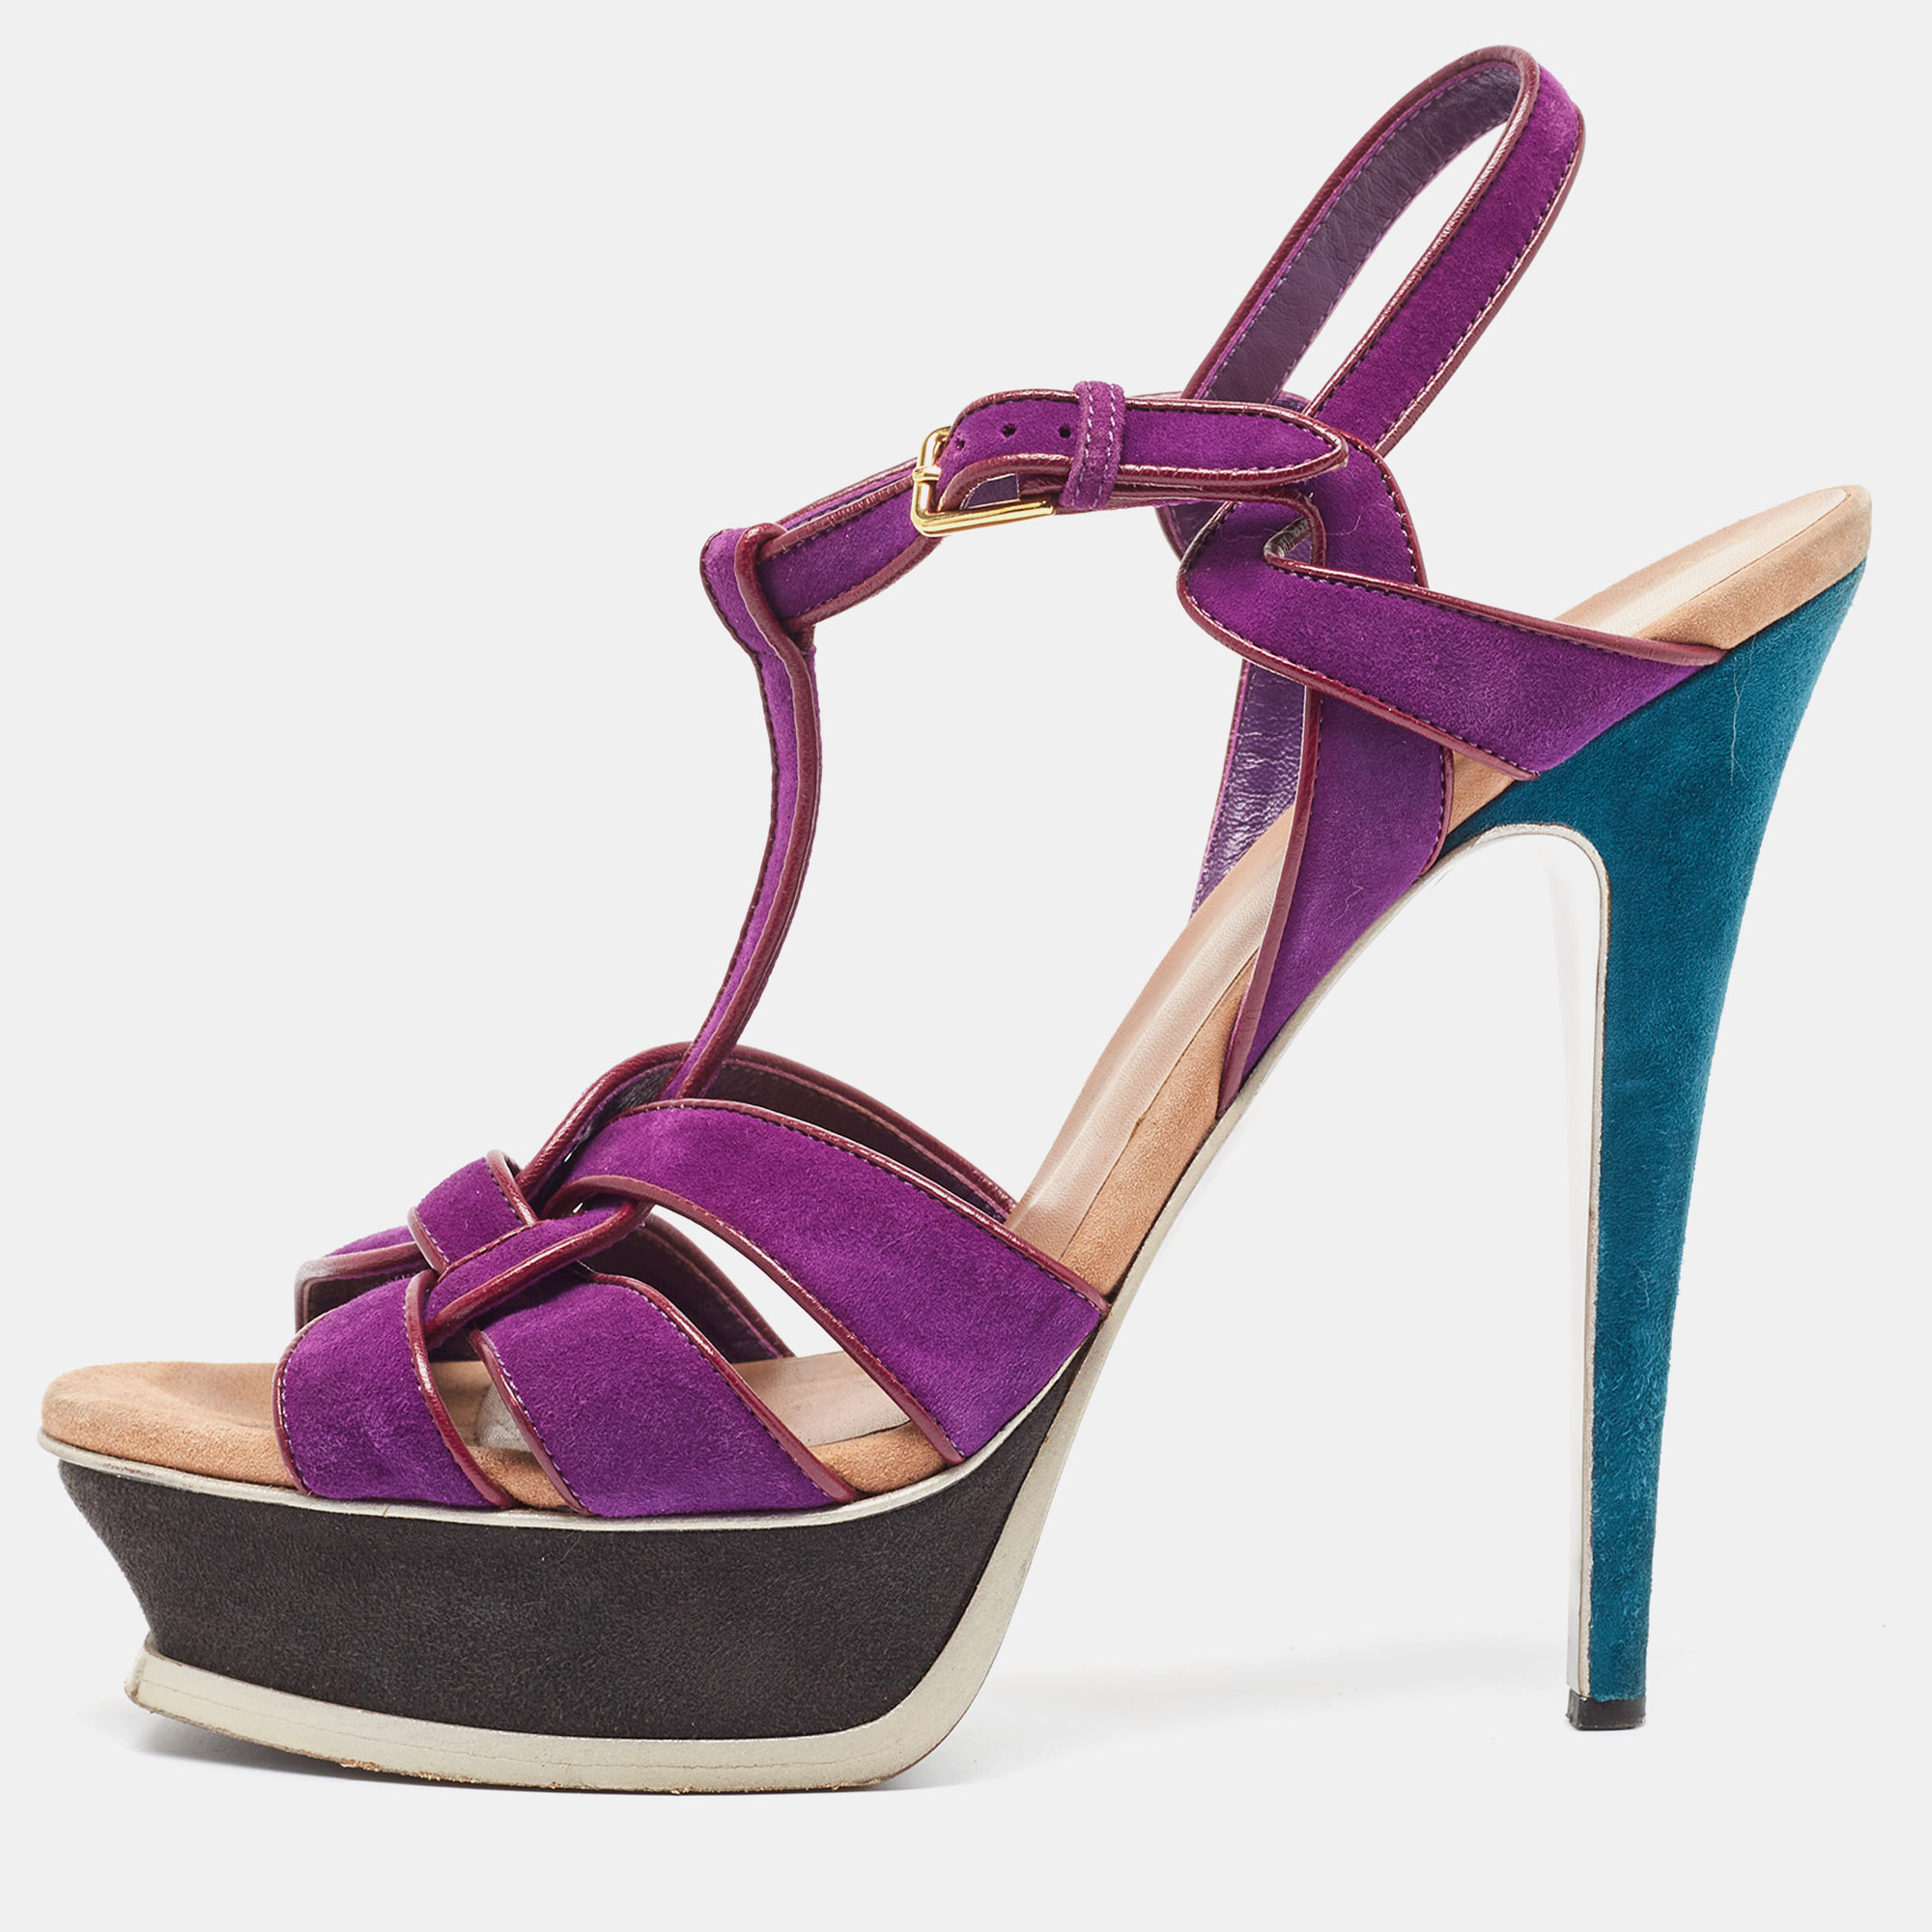 Saint laurent paris saint laurent purple suede tribute sandals size 39